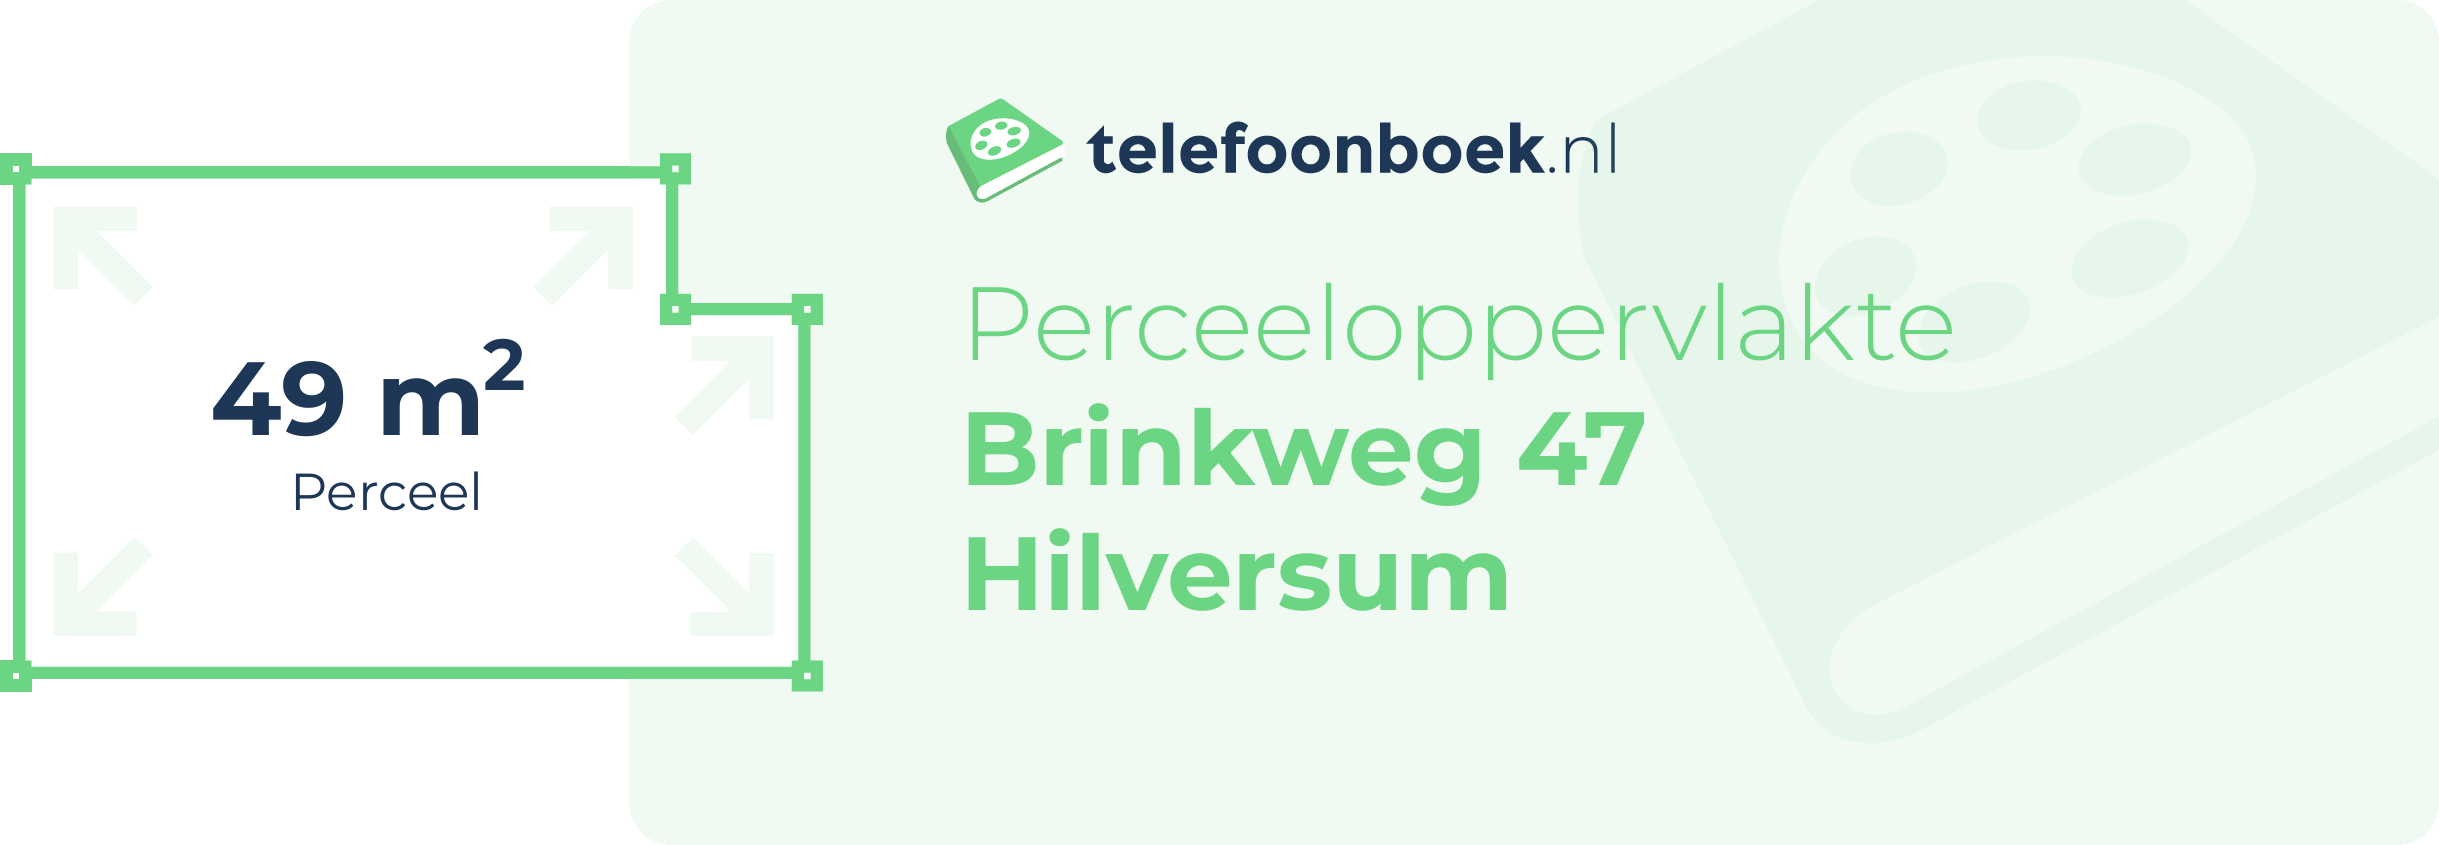 Perceeloppervlakte Brinkweg 47 Hilversum